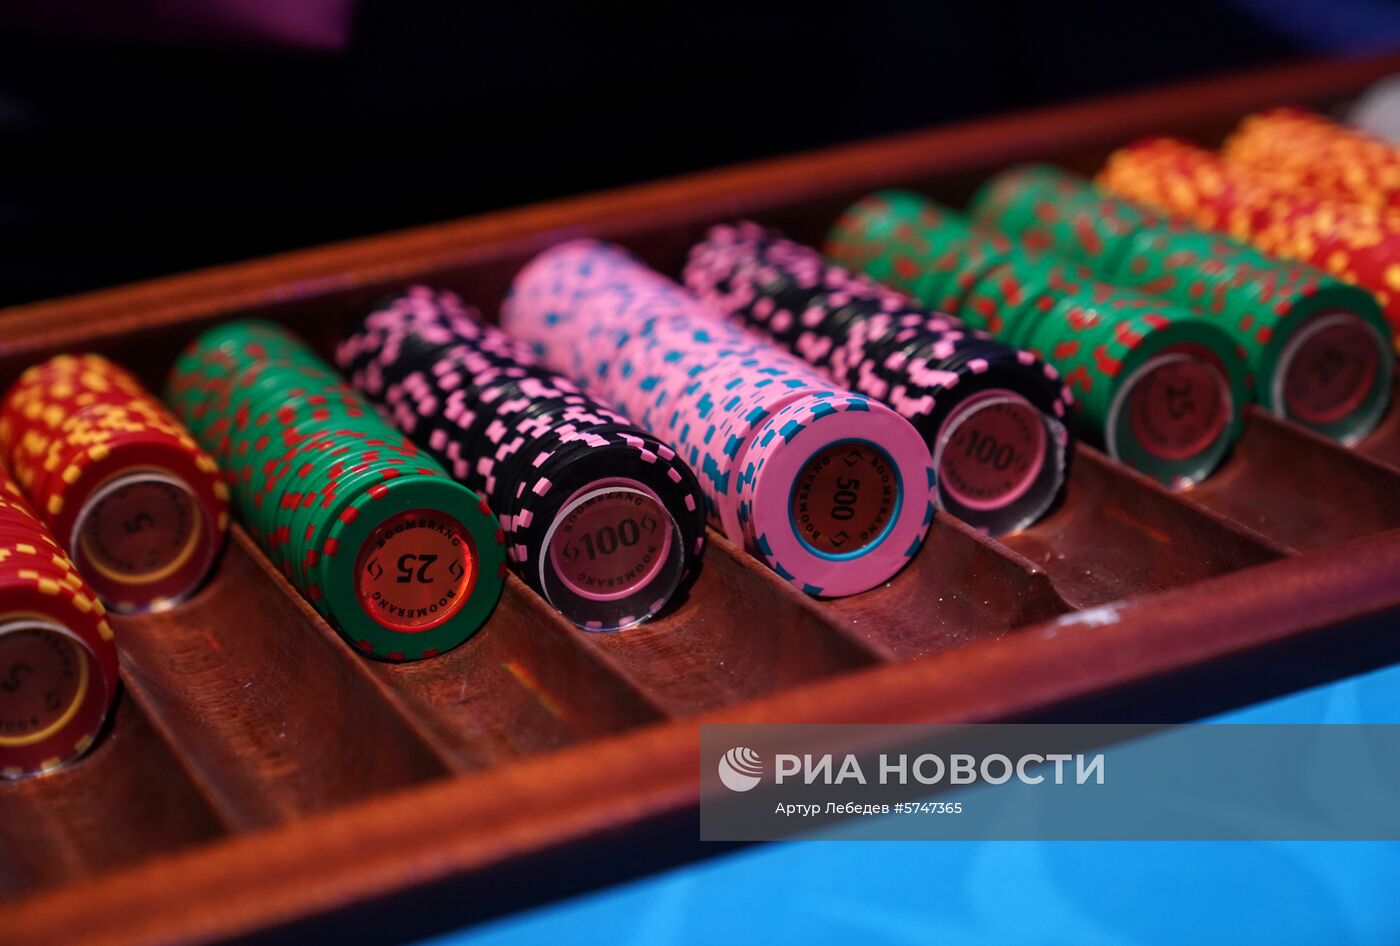 Открытие нового казино в Сочи